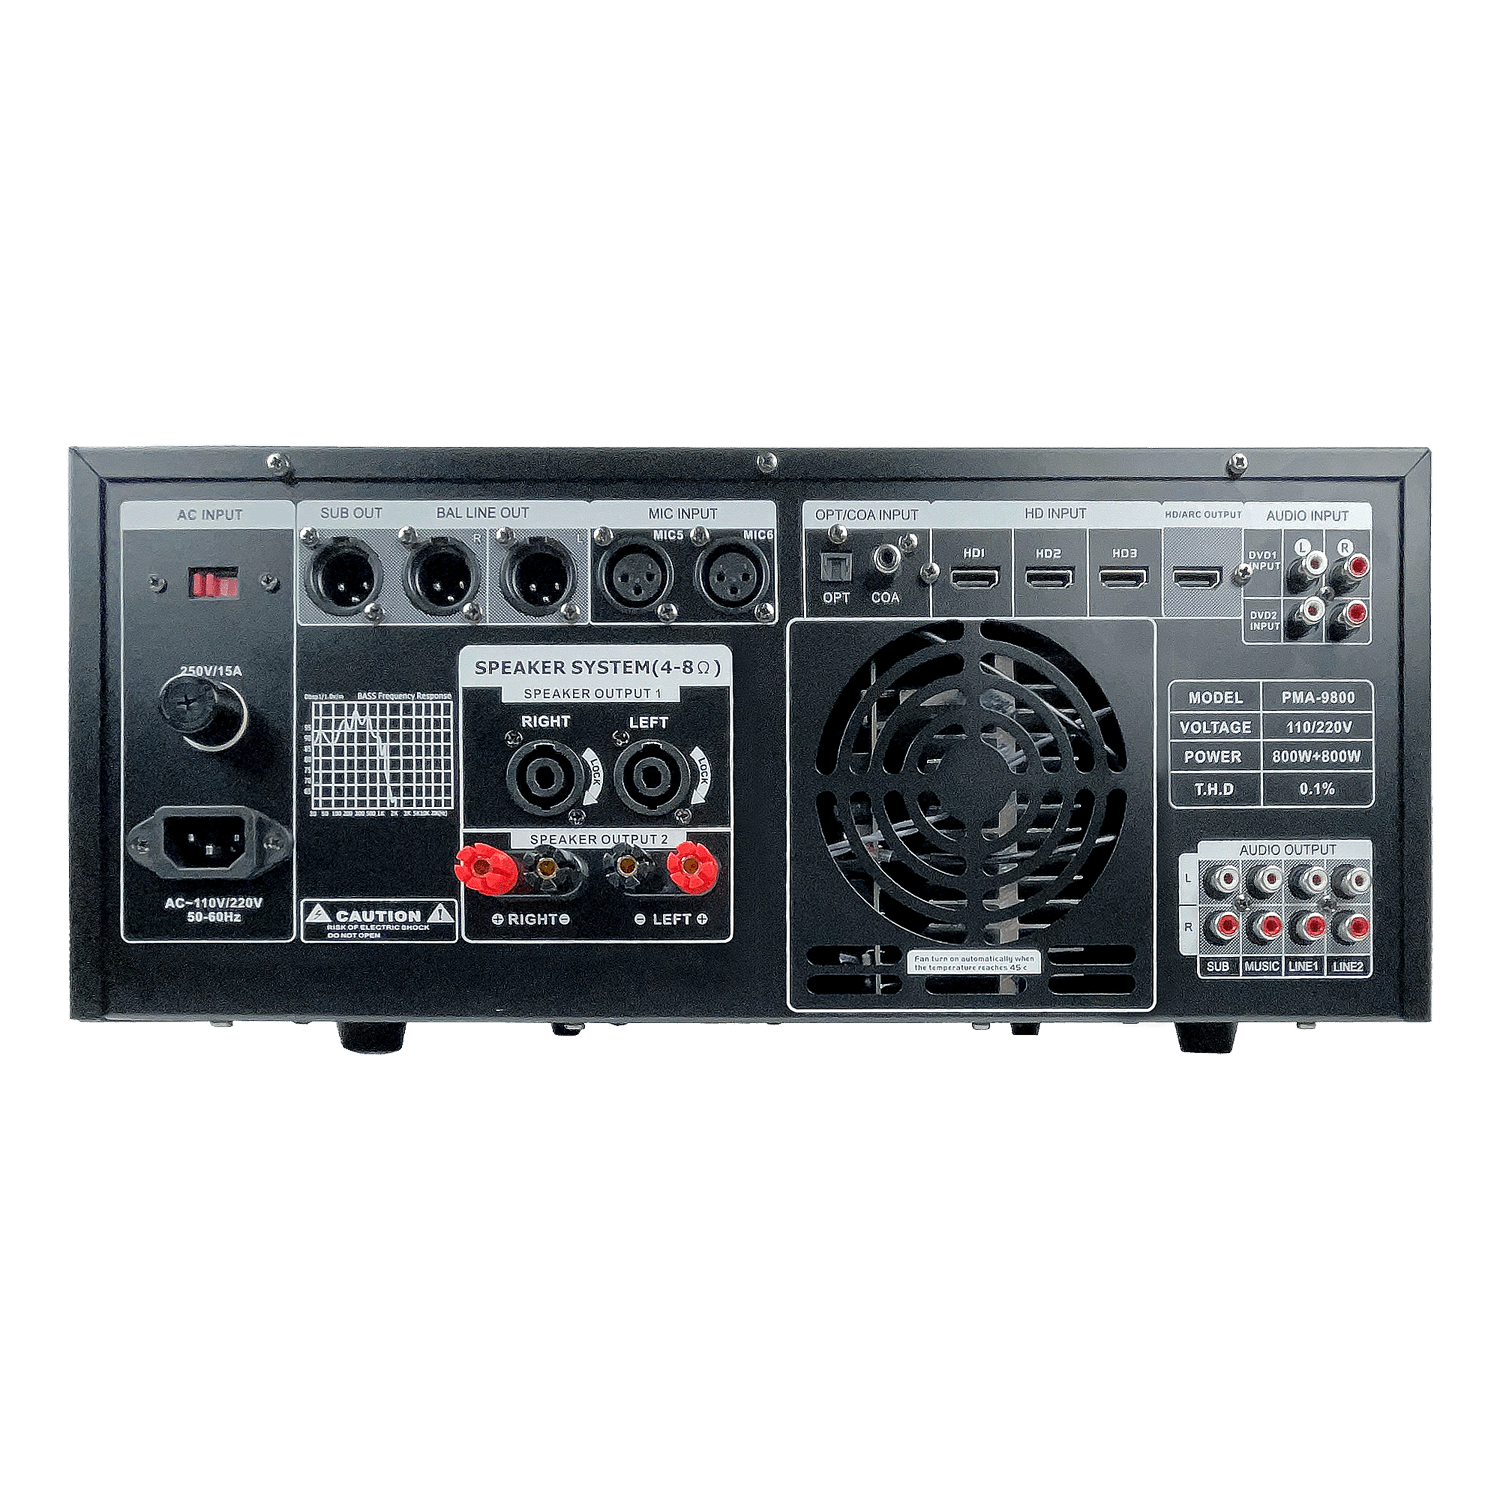 ImPro PMA-9800 1600W Karaoke Mixing Amplifier